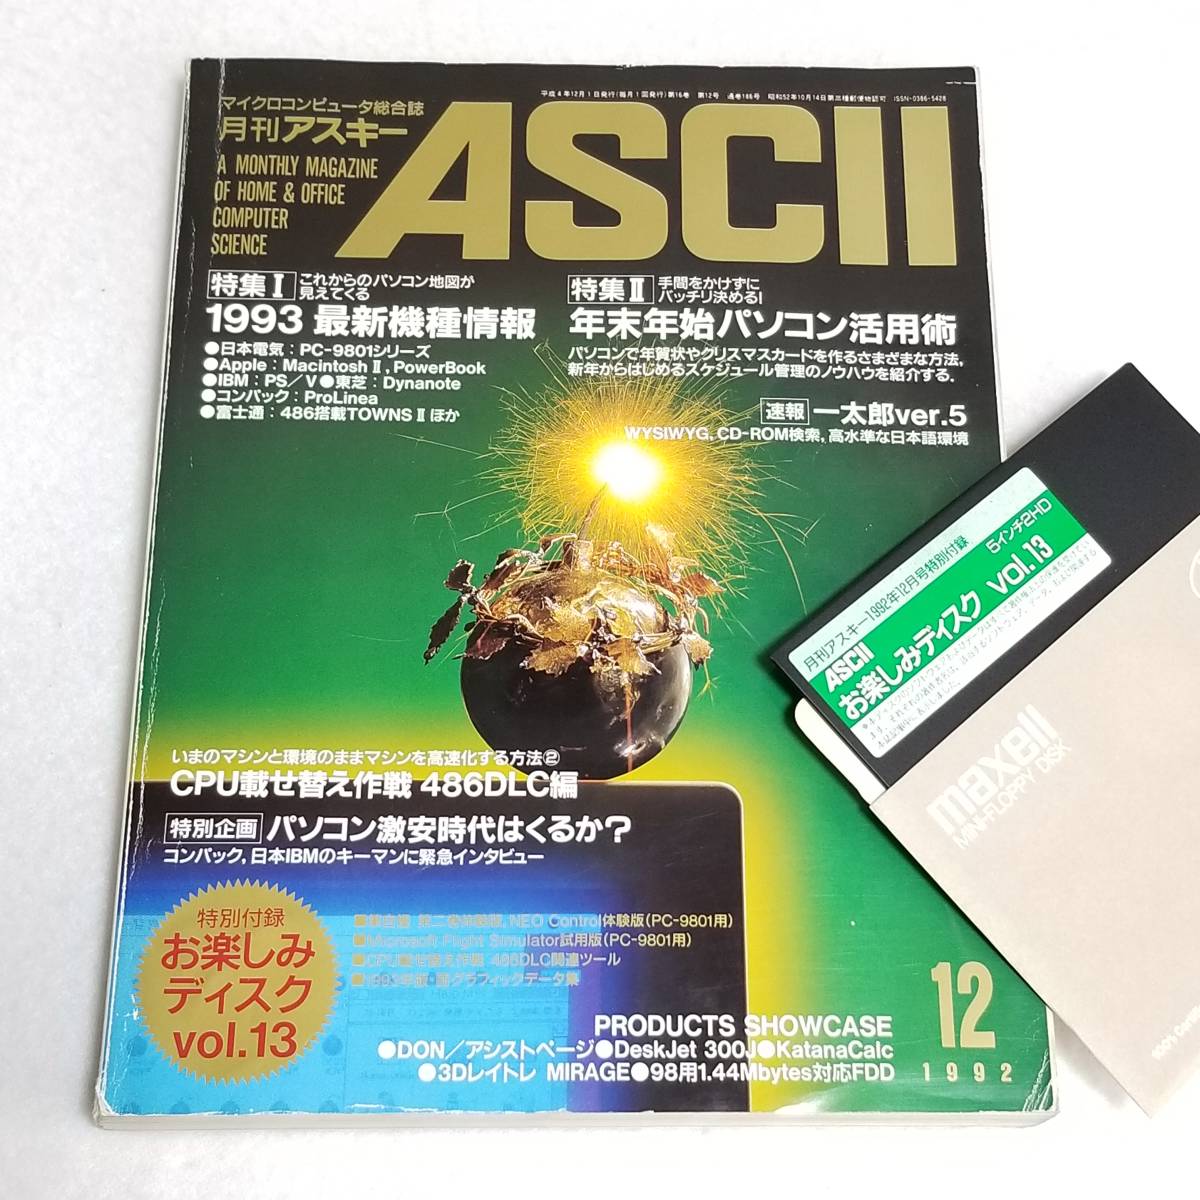 月刊アスキー 【オープニング大セール】 1992 12月号 マイクロコンピュータ総合誌 祝開店 大放出セール開催中 ASCII No.186